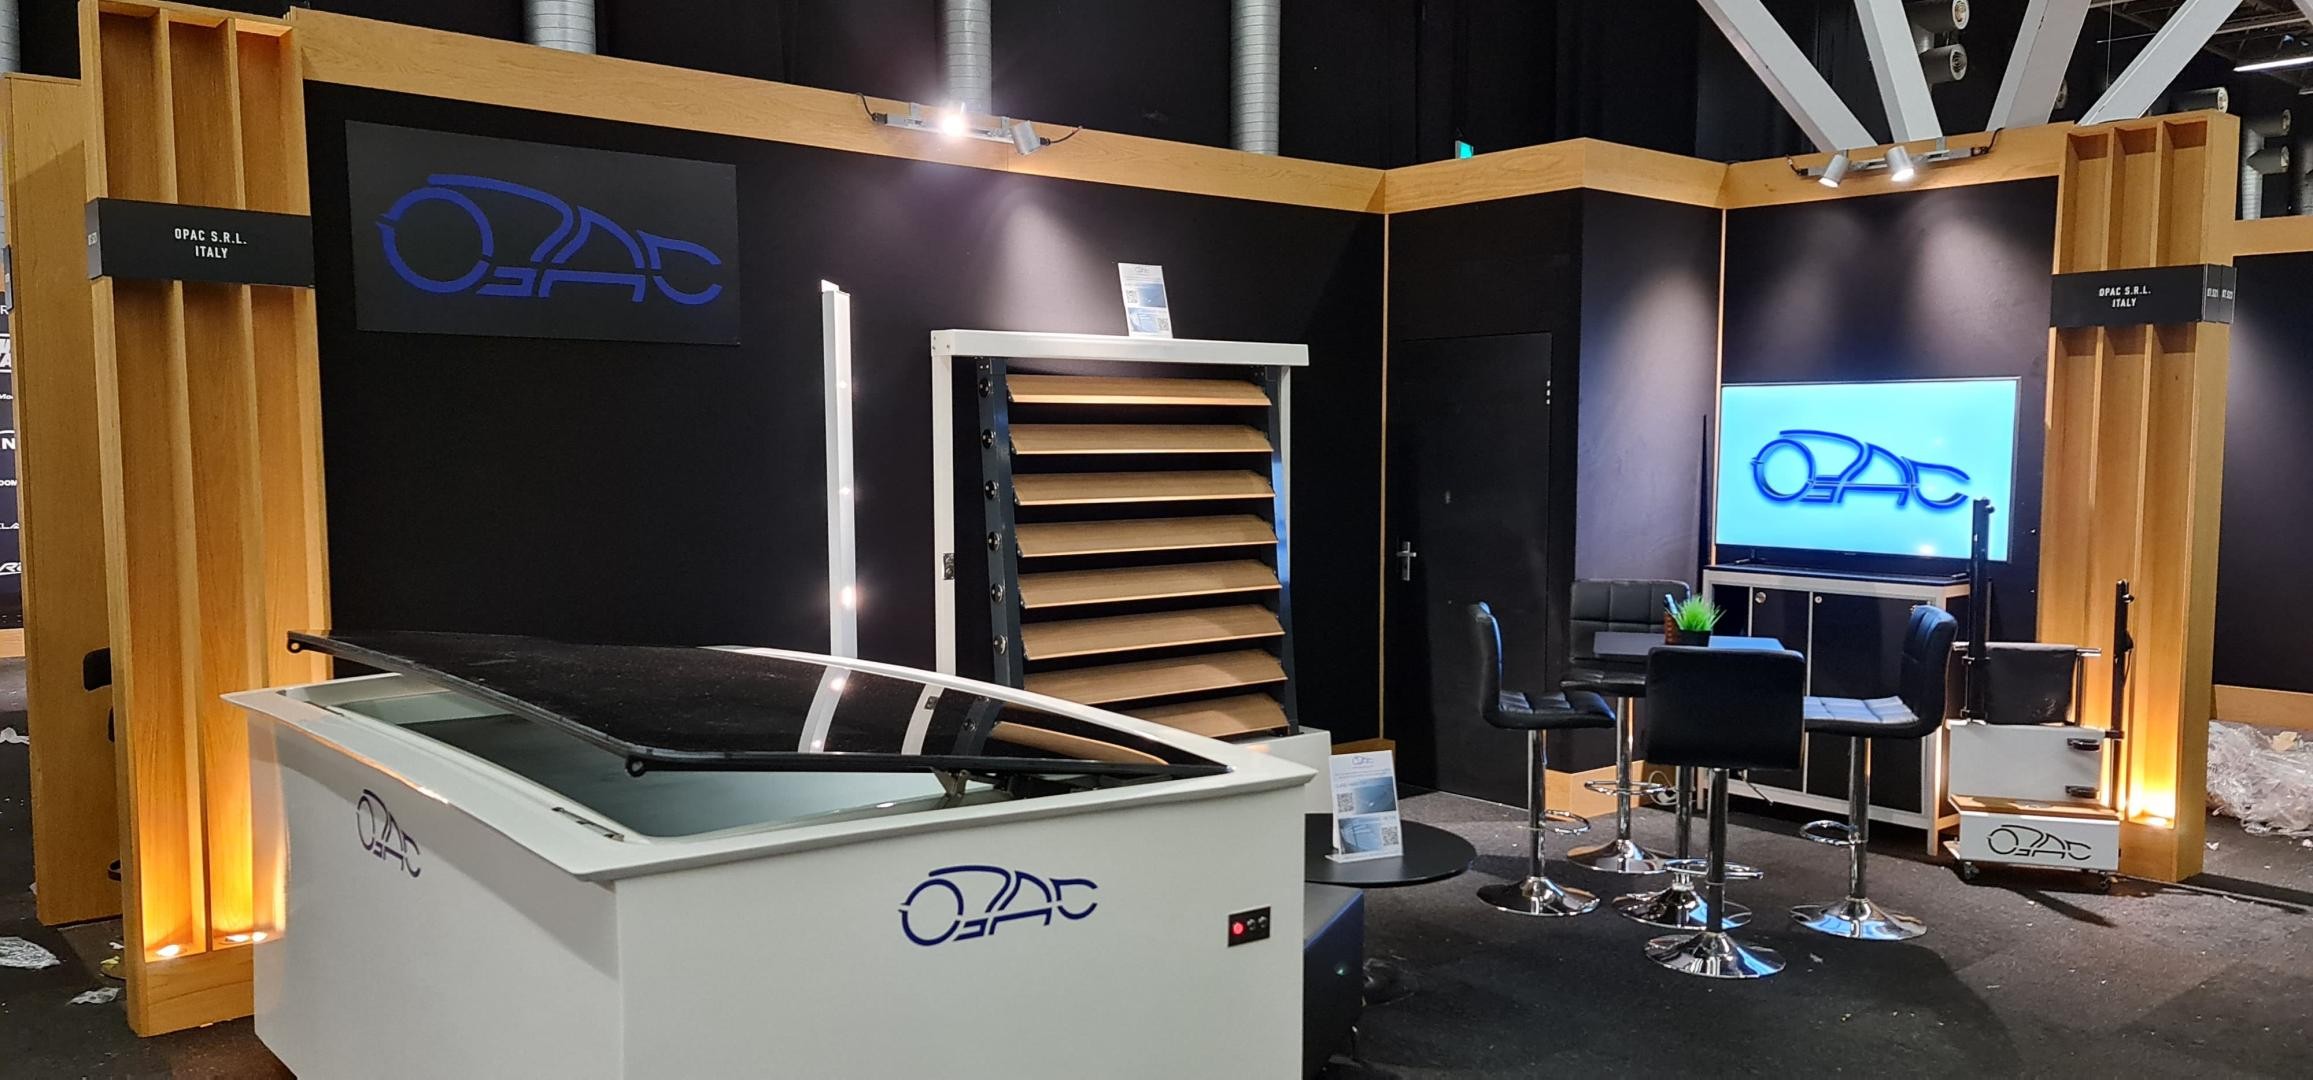 OPAC presenta i suoi più recenti prodotti al METS di Amsterdam 